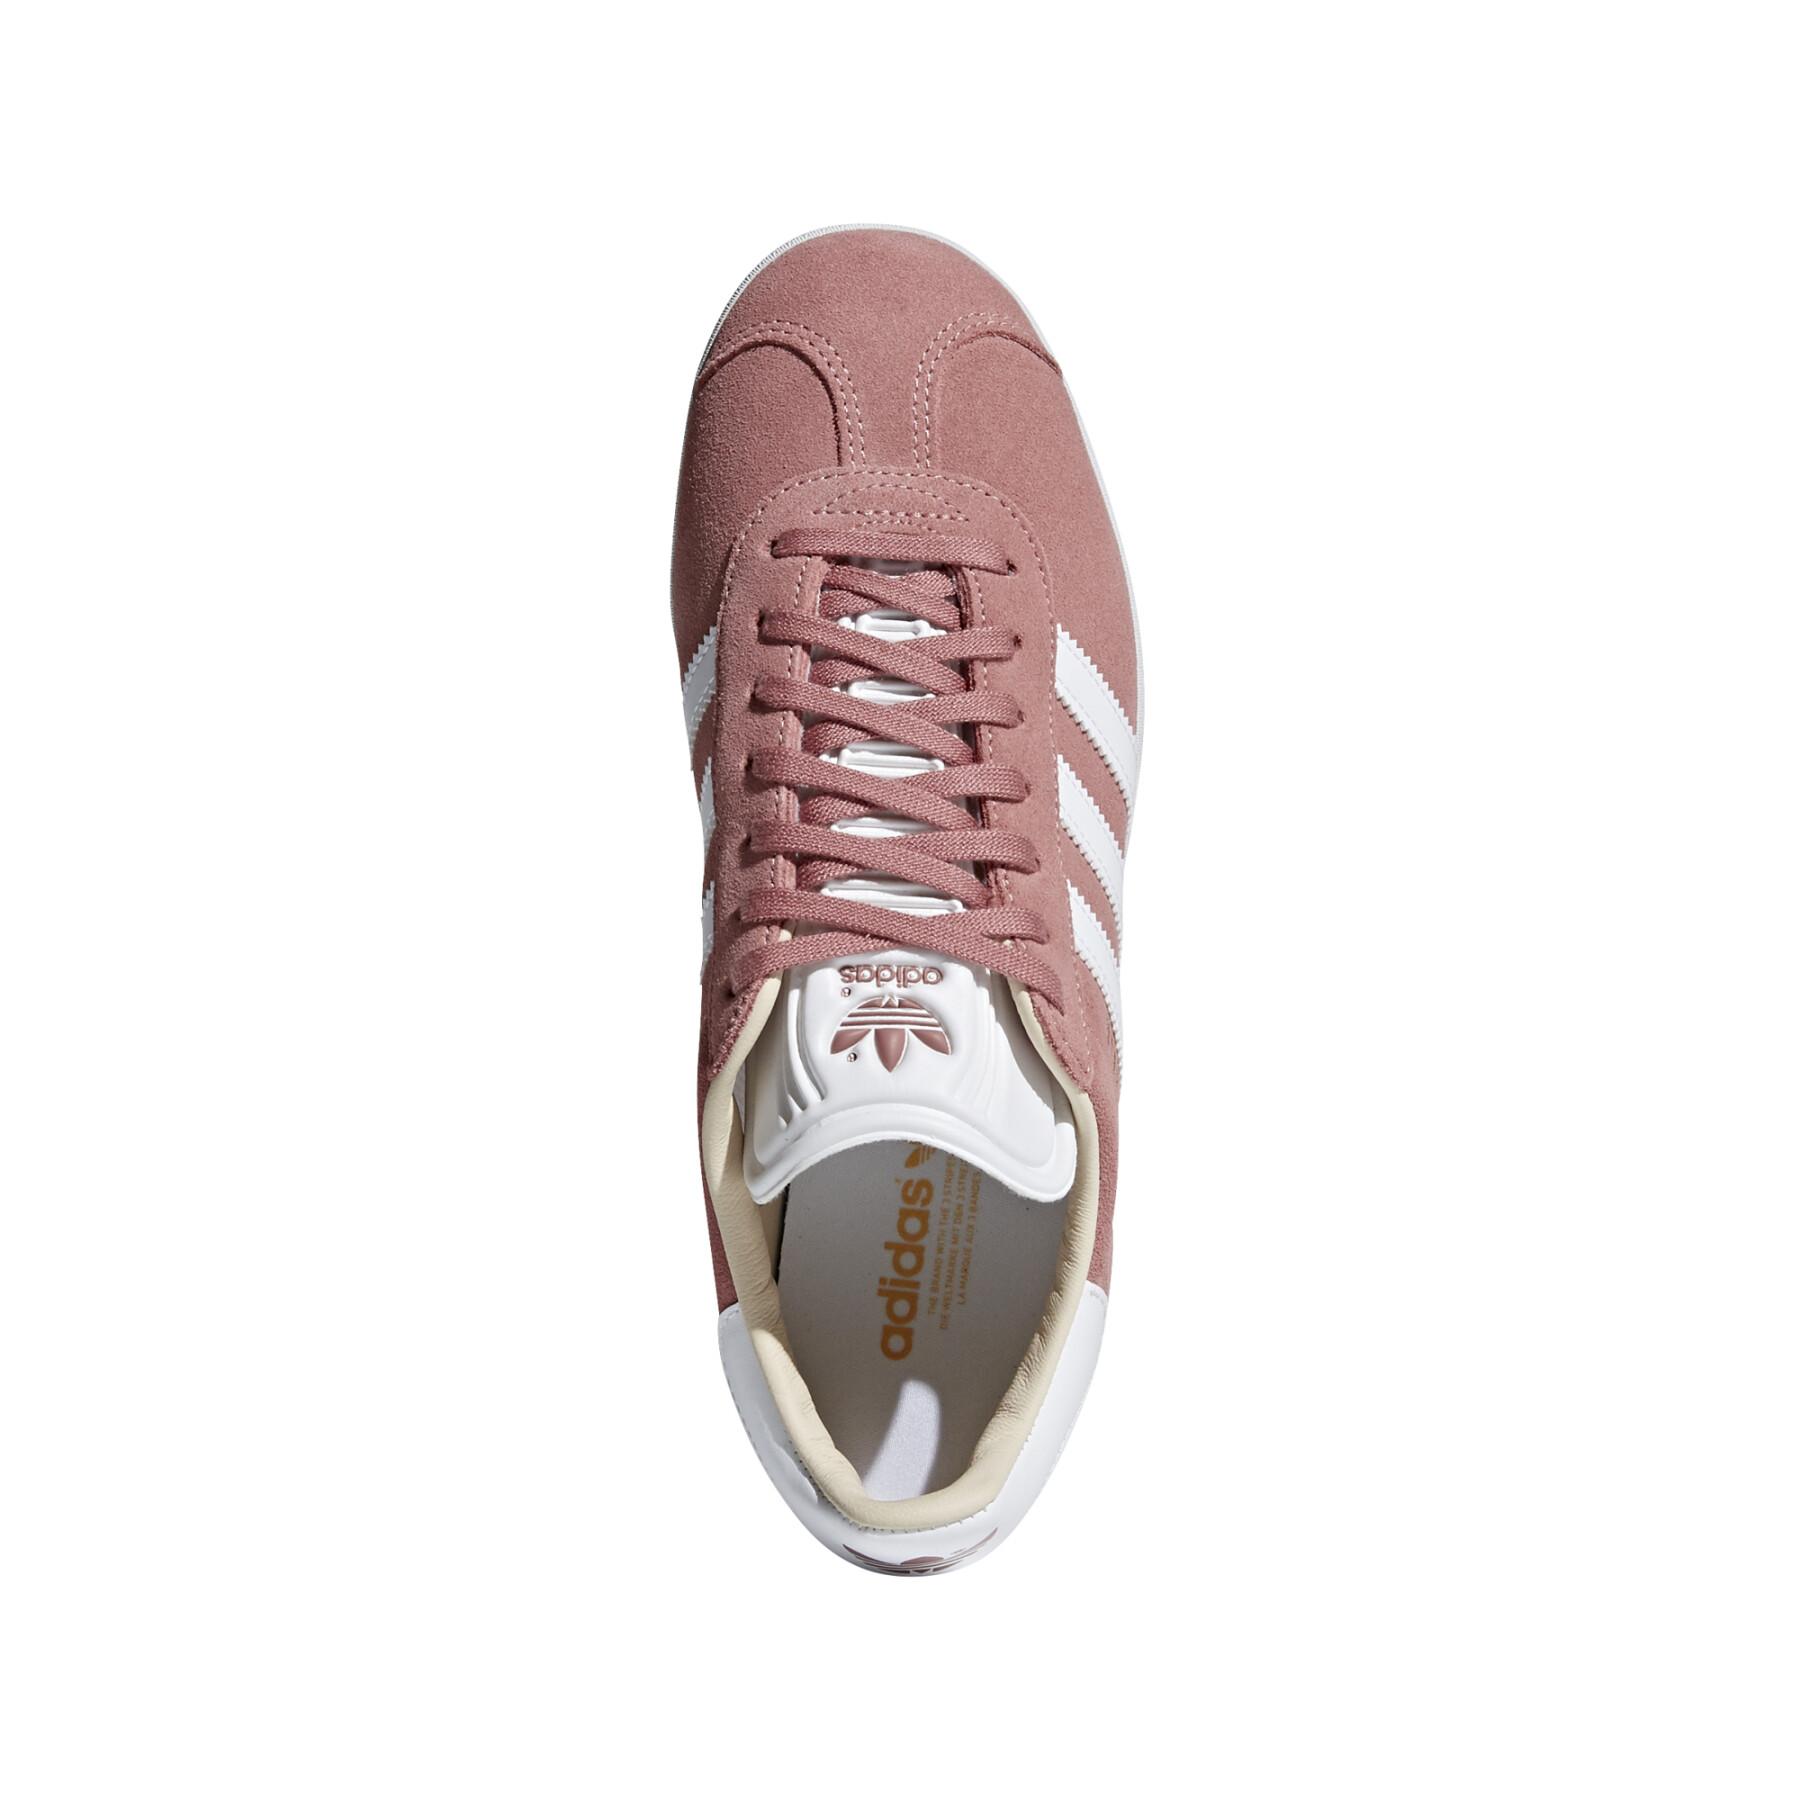 adidas Gazelle Women's Sneakers